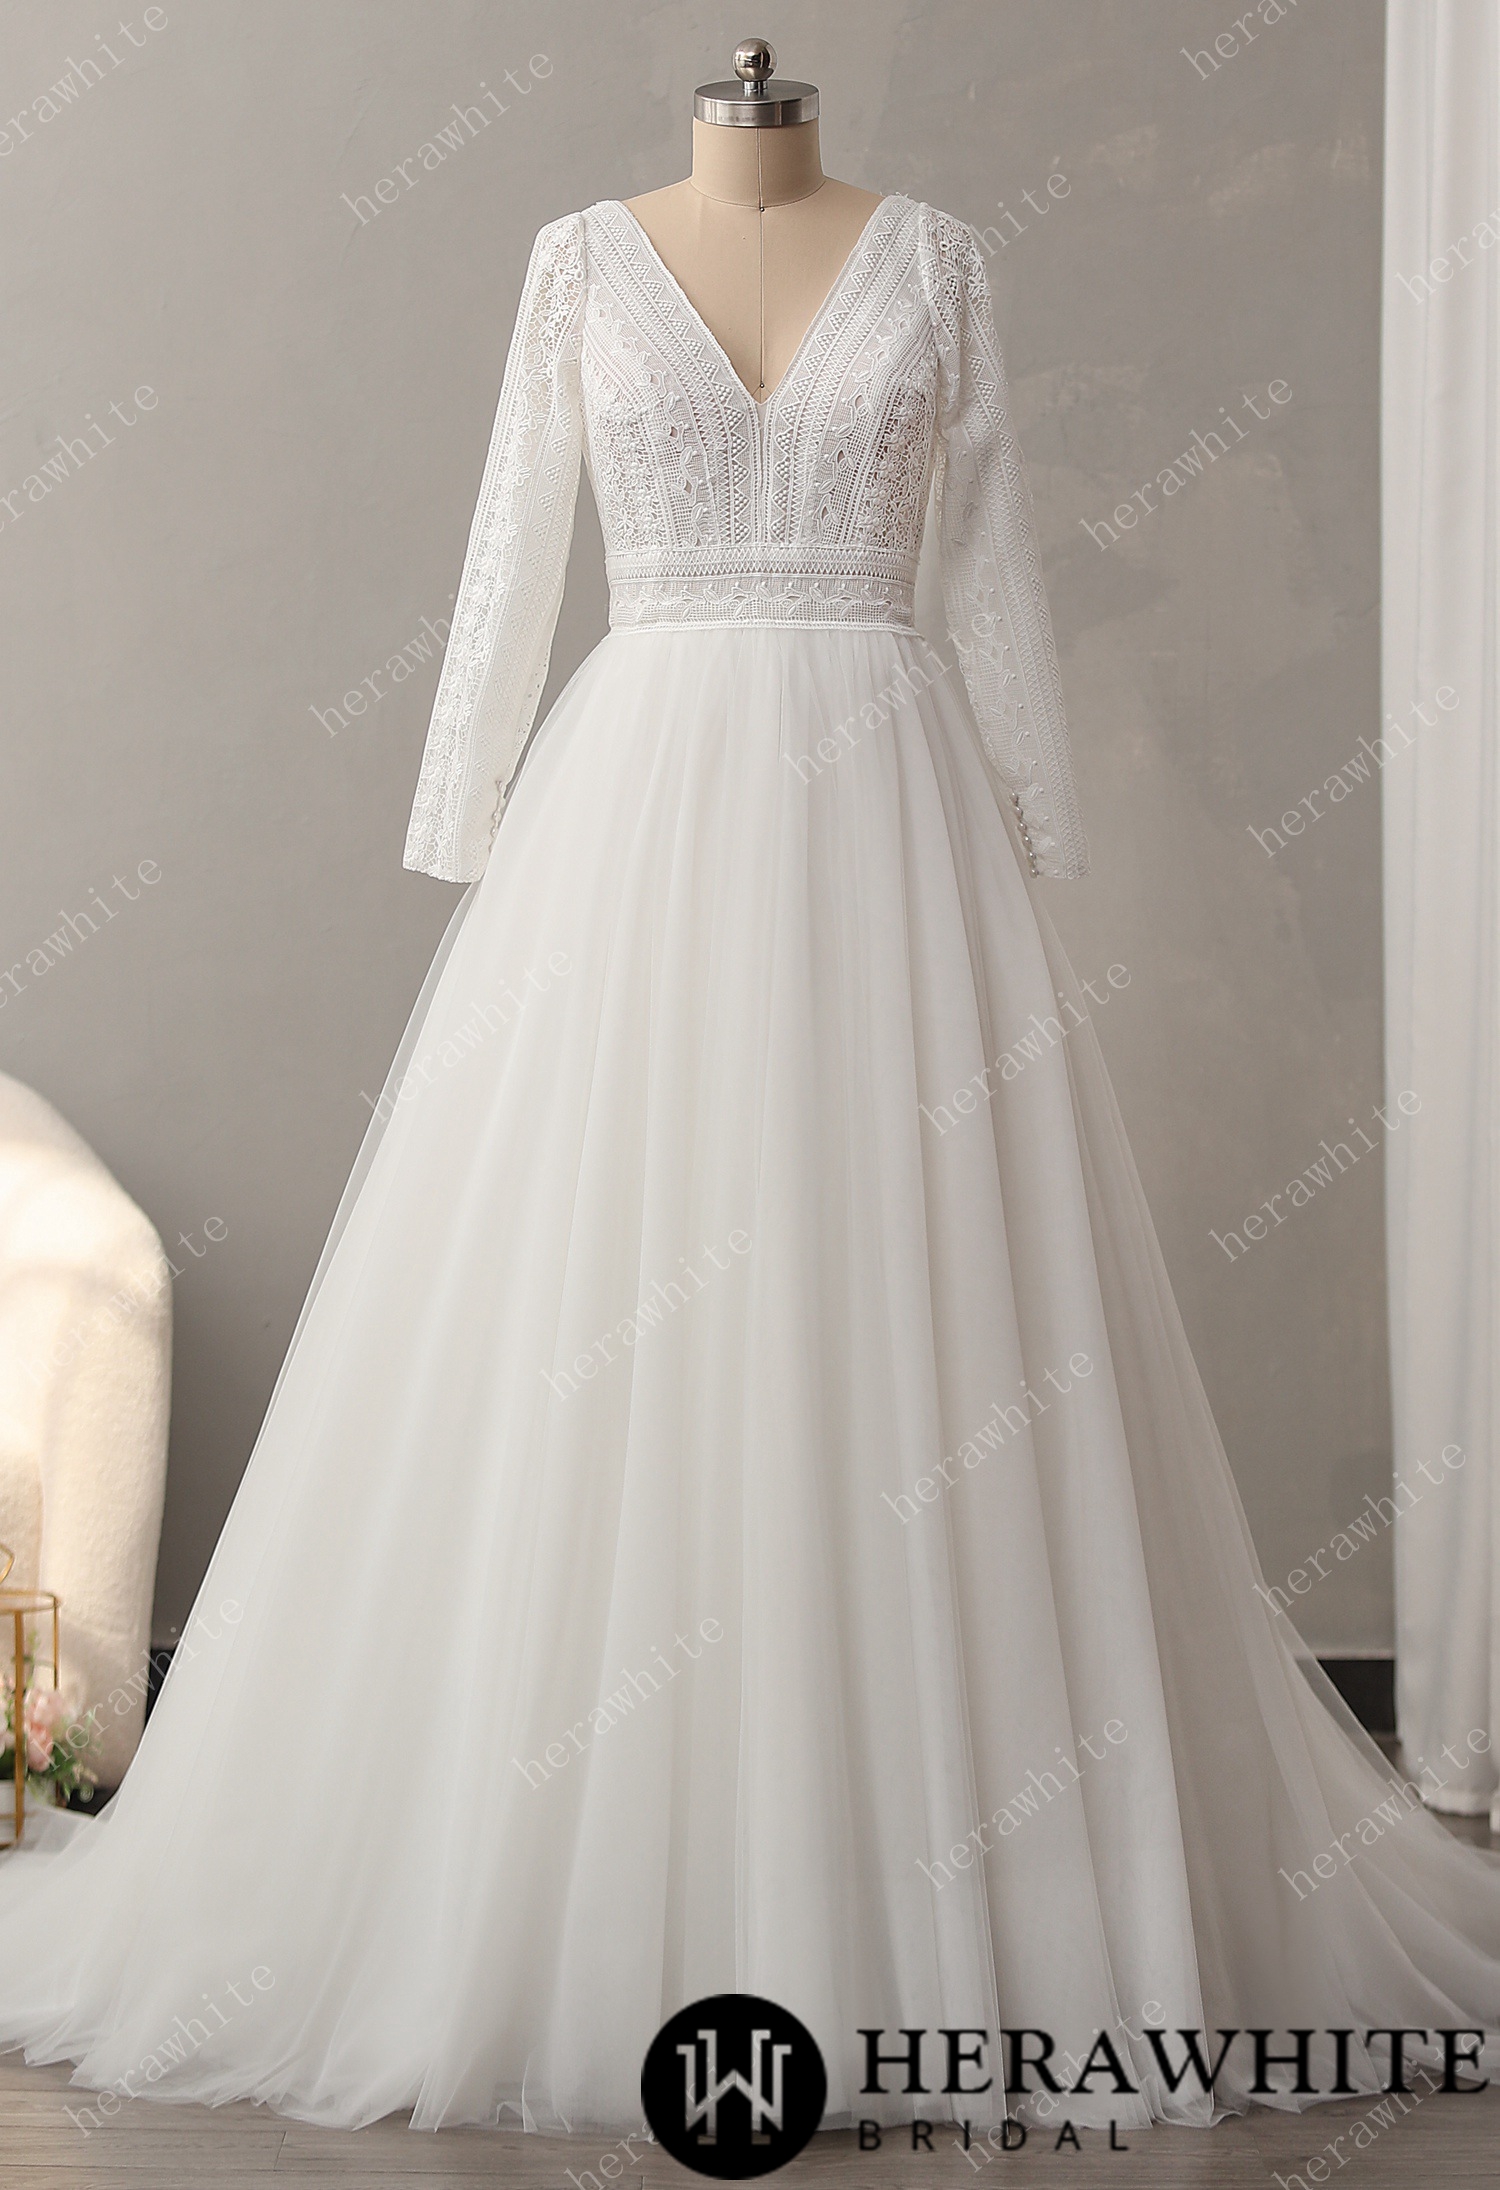 Graphlc Lace Boho Wedding Dress with Long Sleeve and V-Back